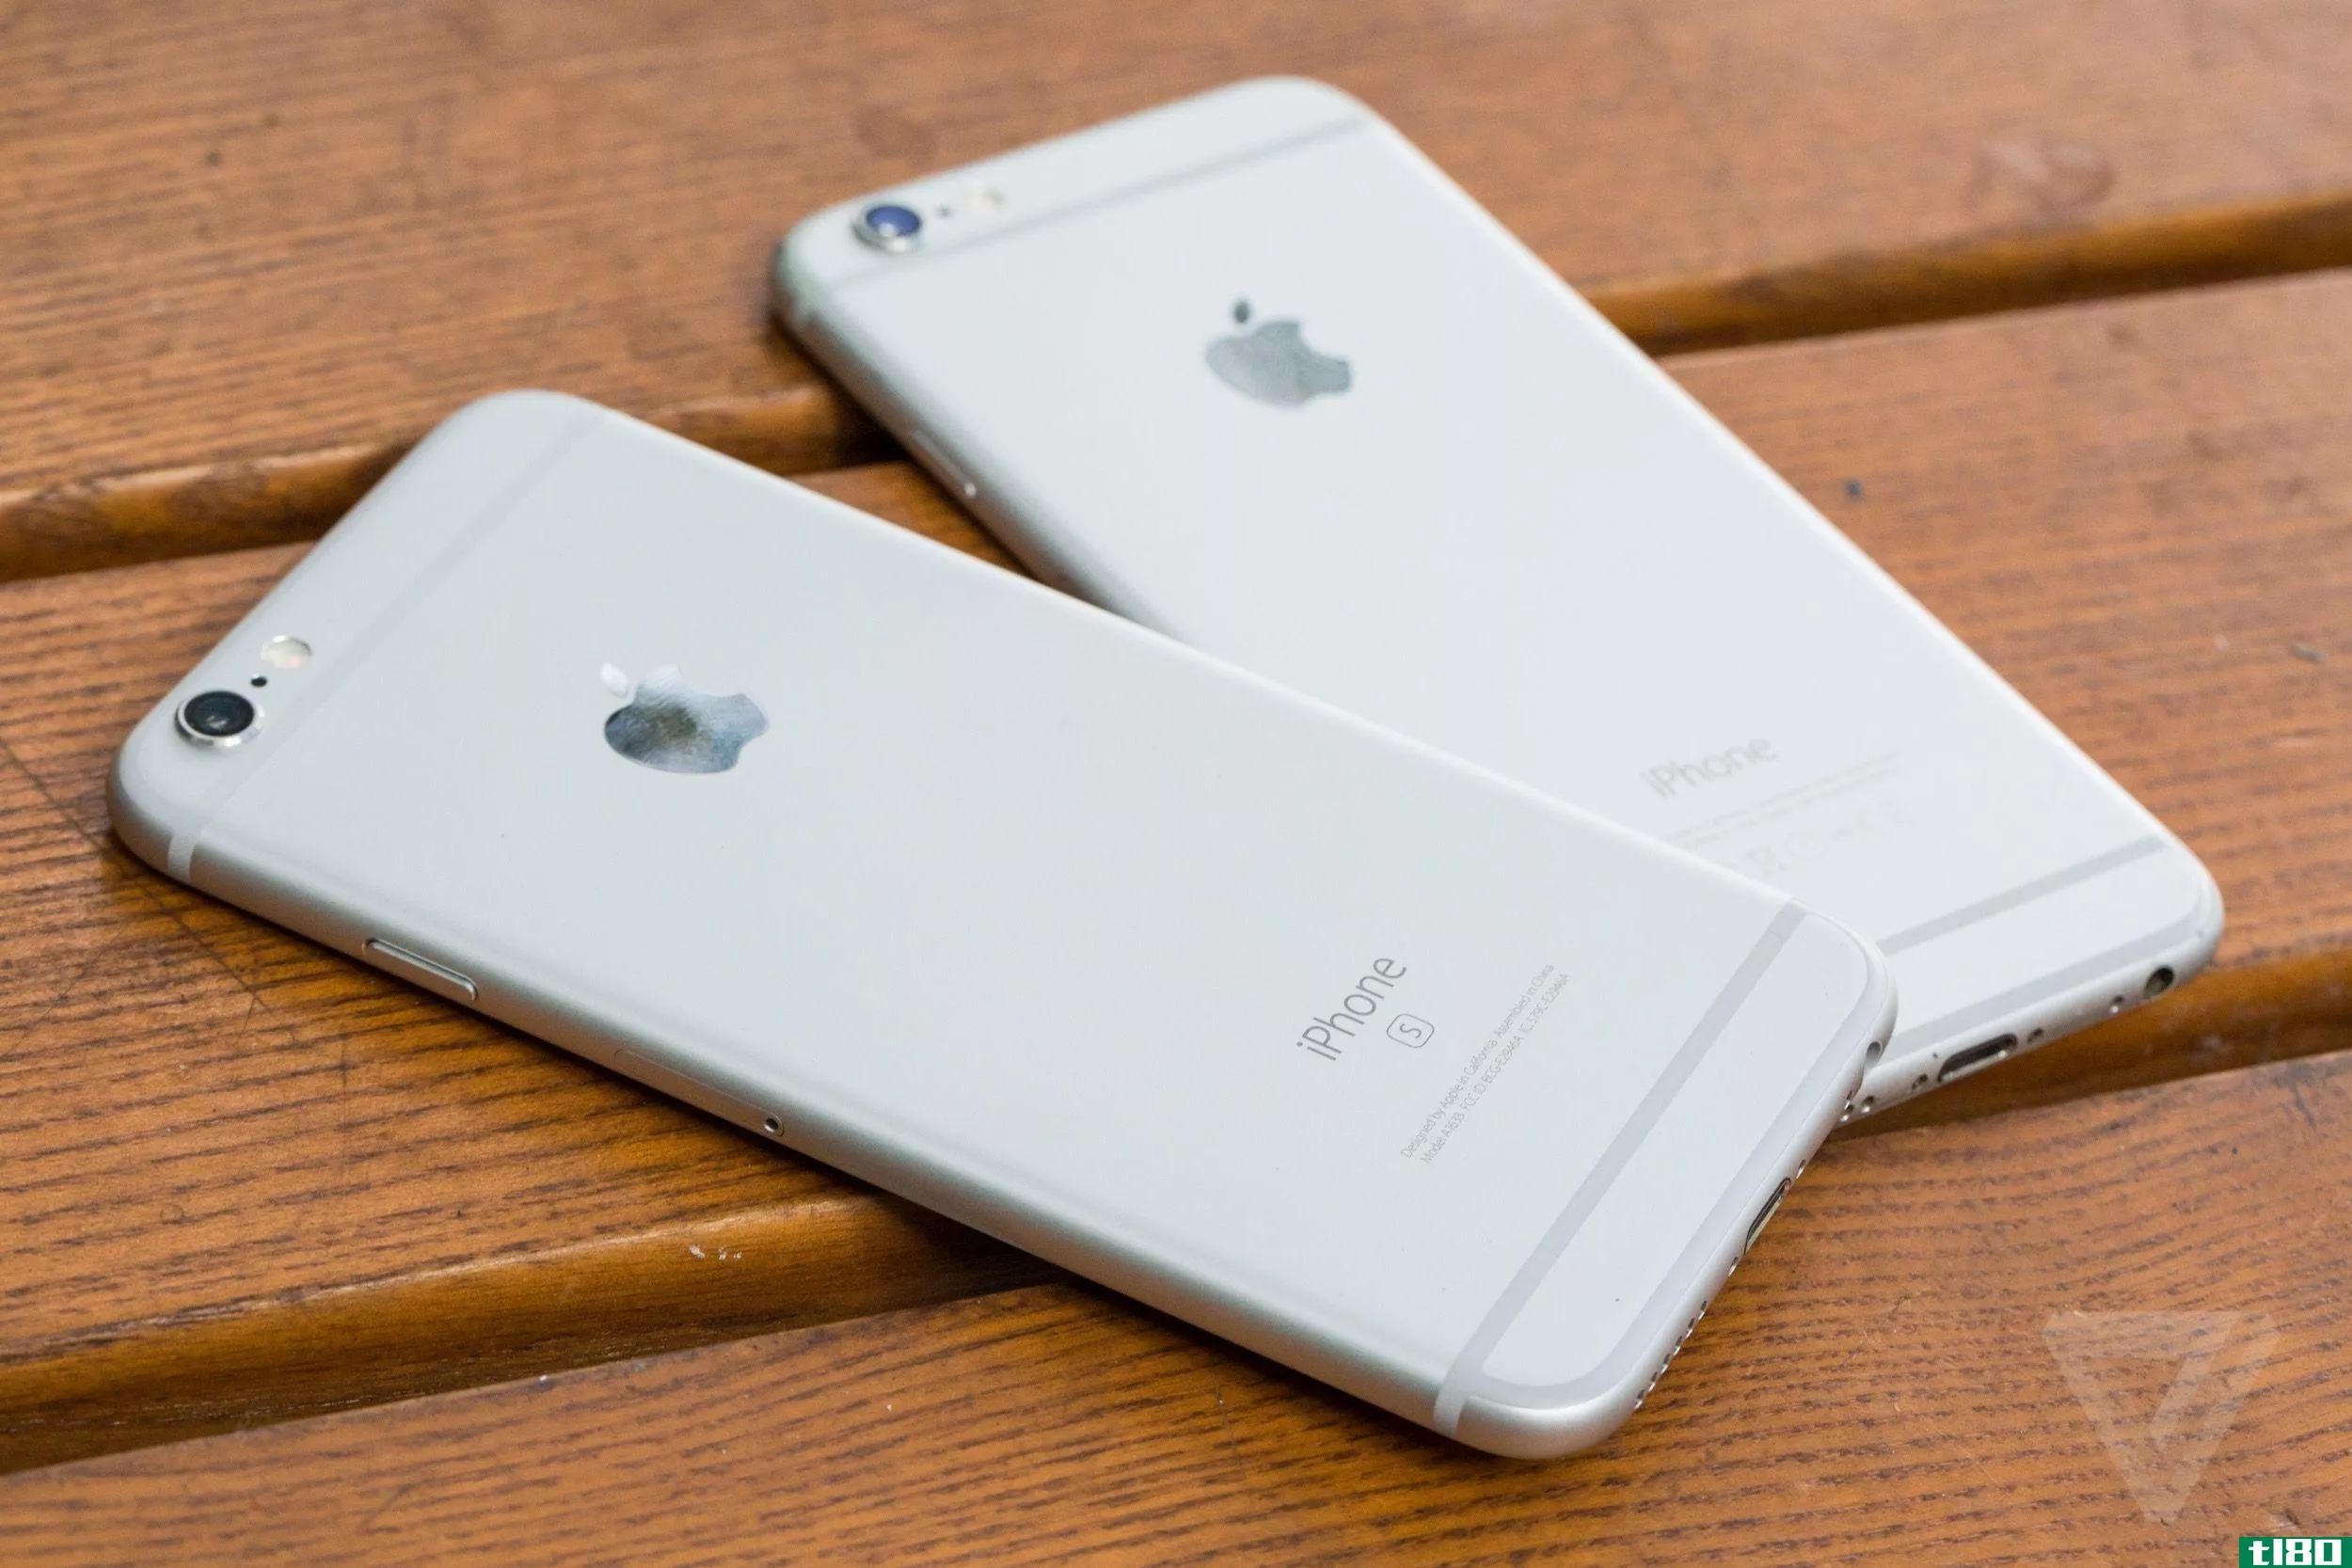 苹果同意在专利交易中向爱立信支付其iphone收入的一部分